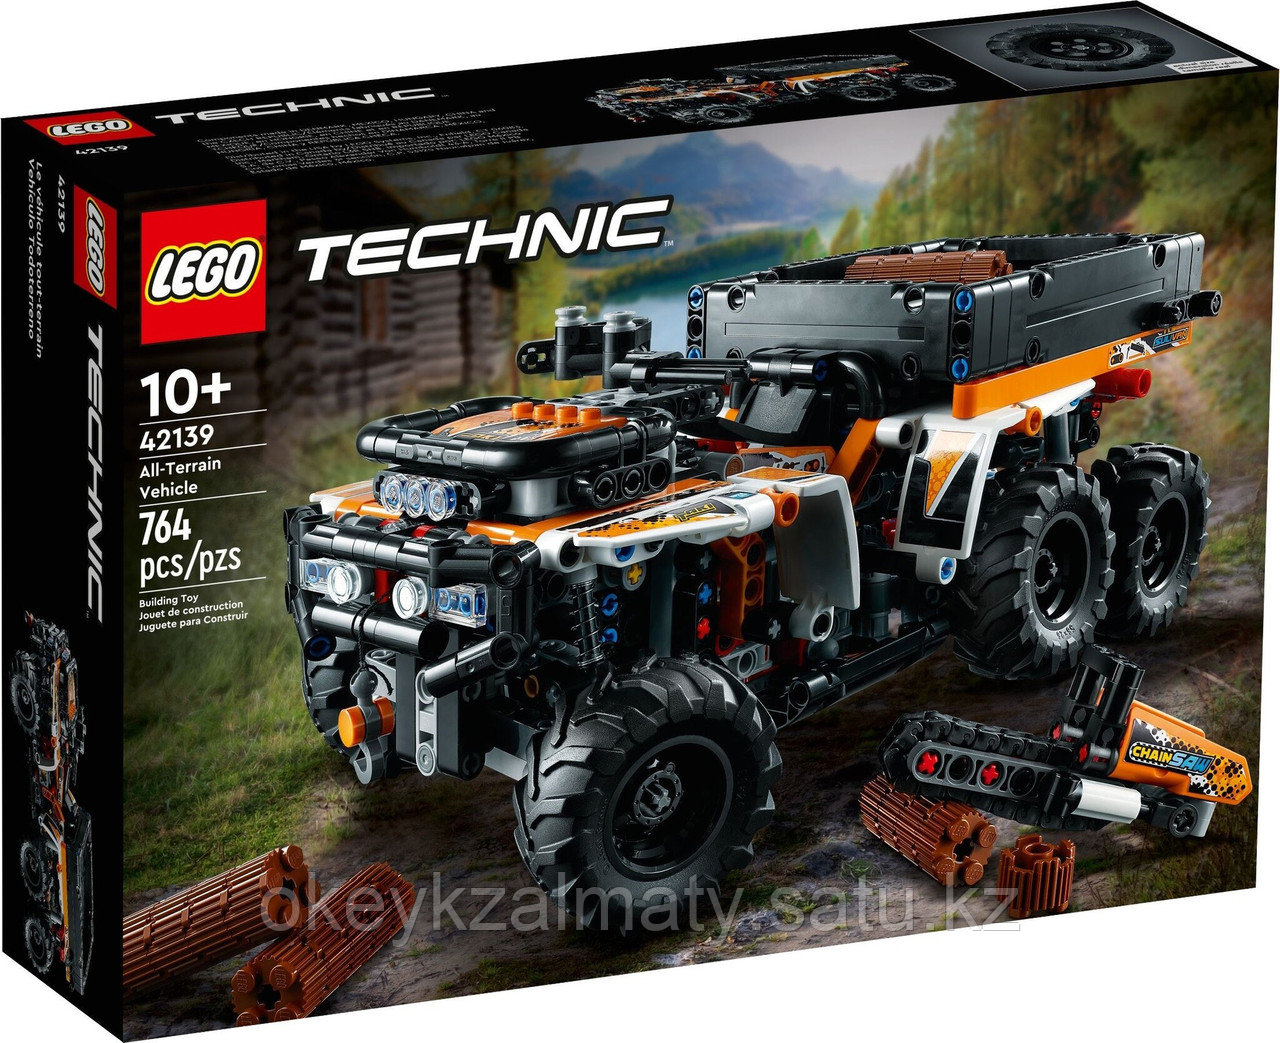 LEGO Technic: Внедорожный грузовик 42139